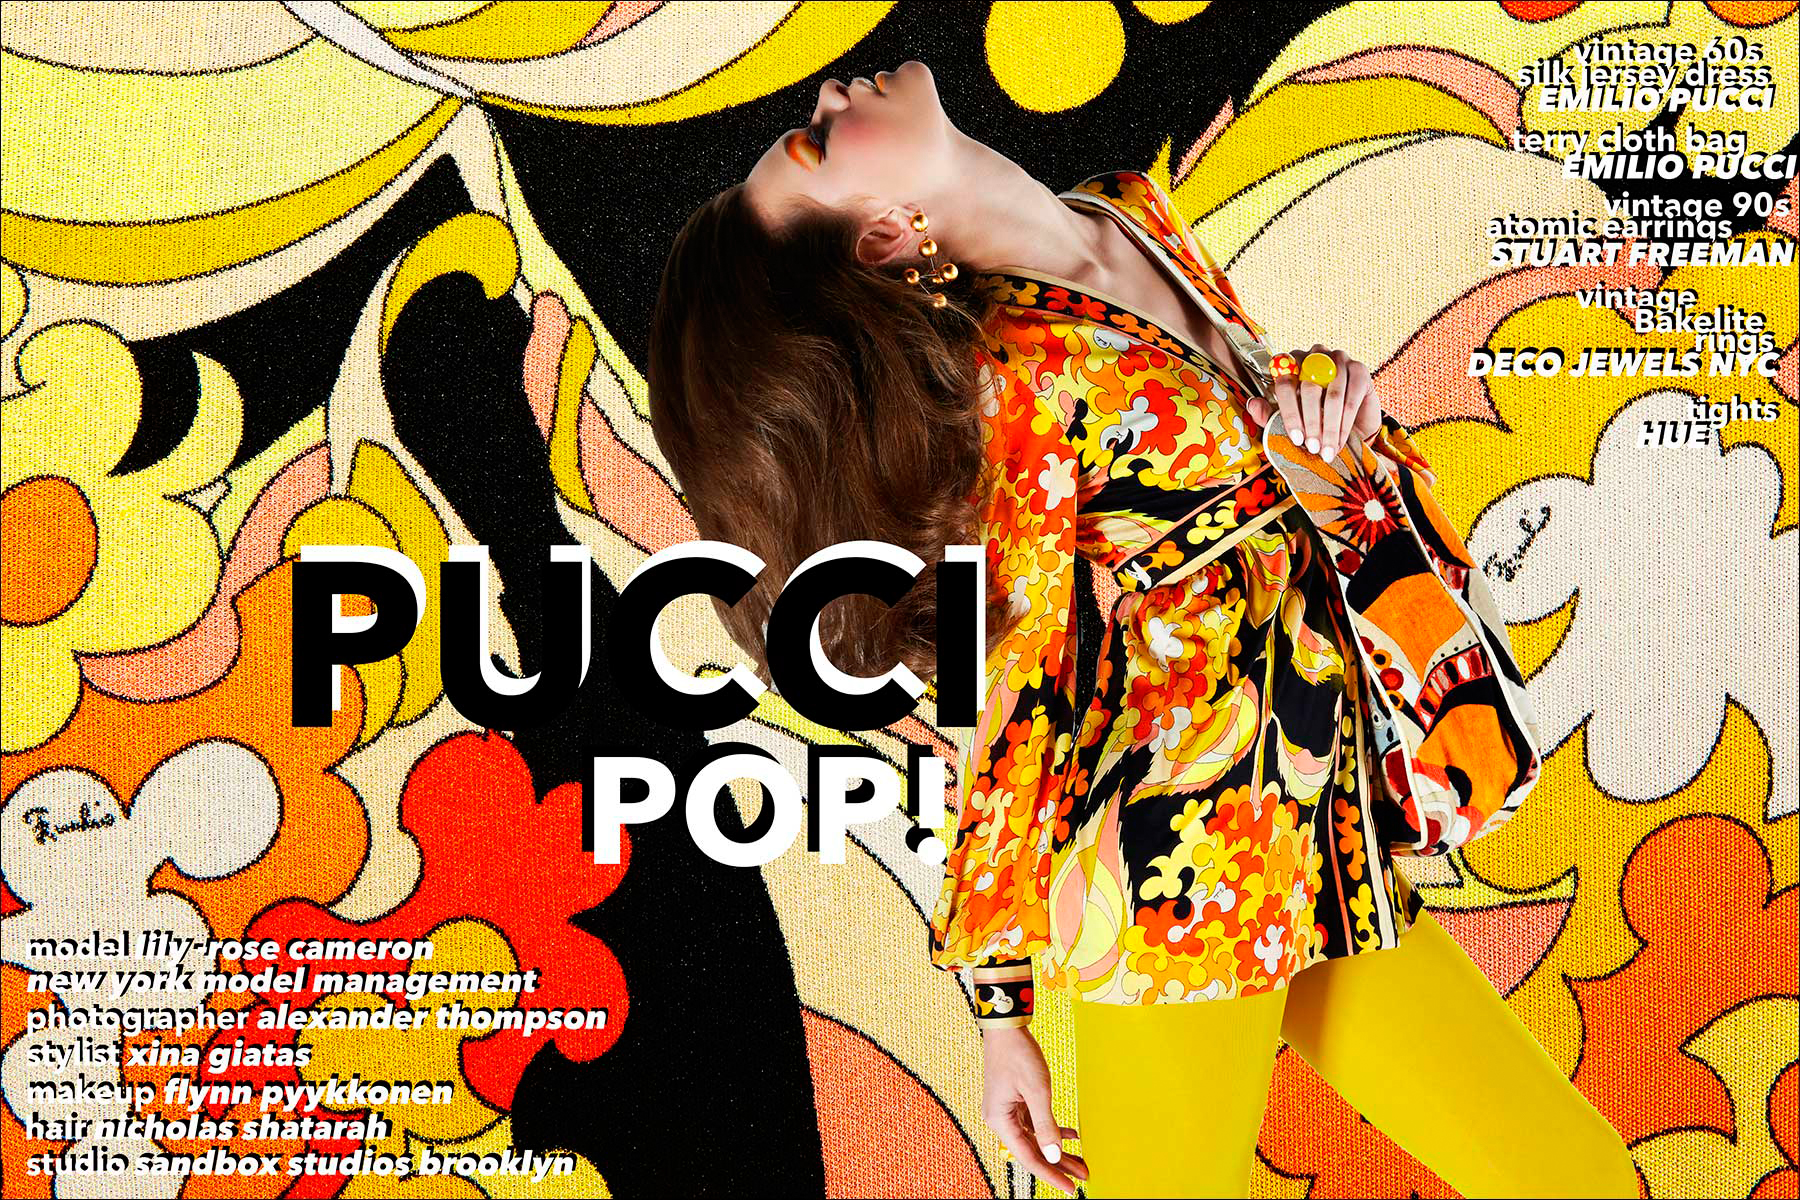 Pucci Pop